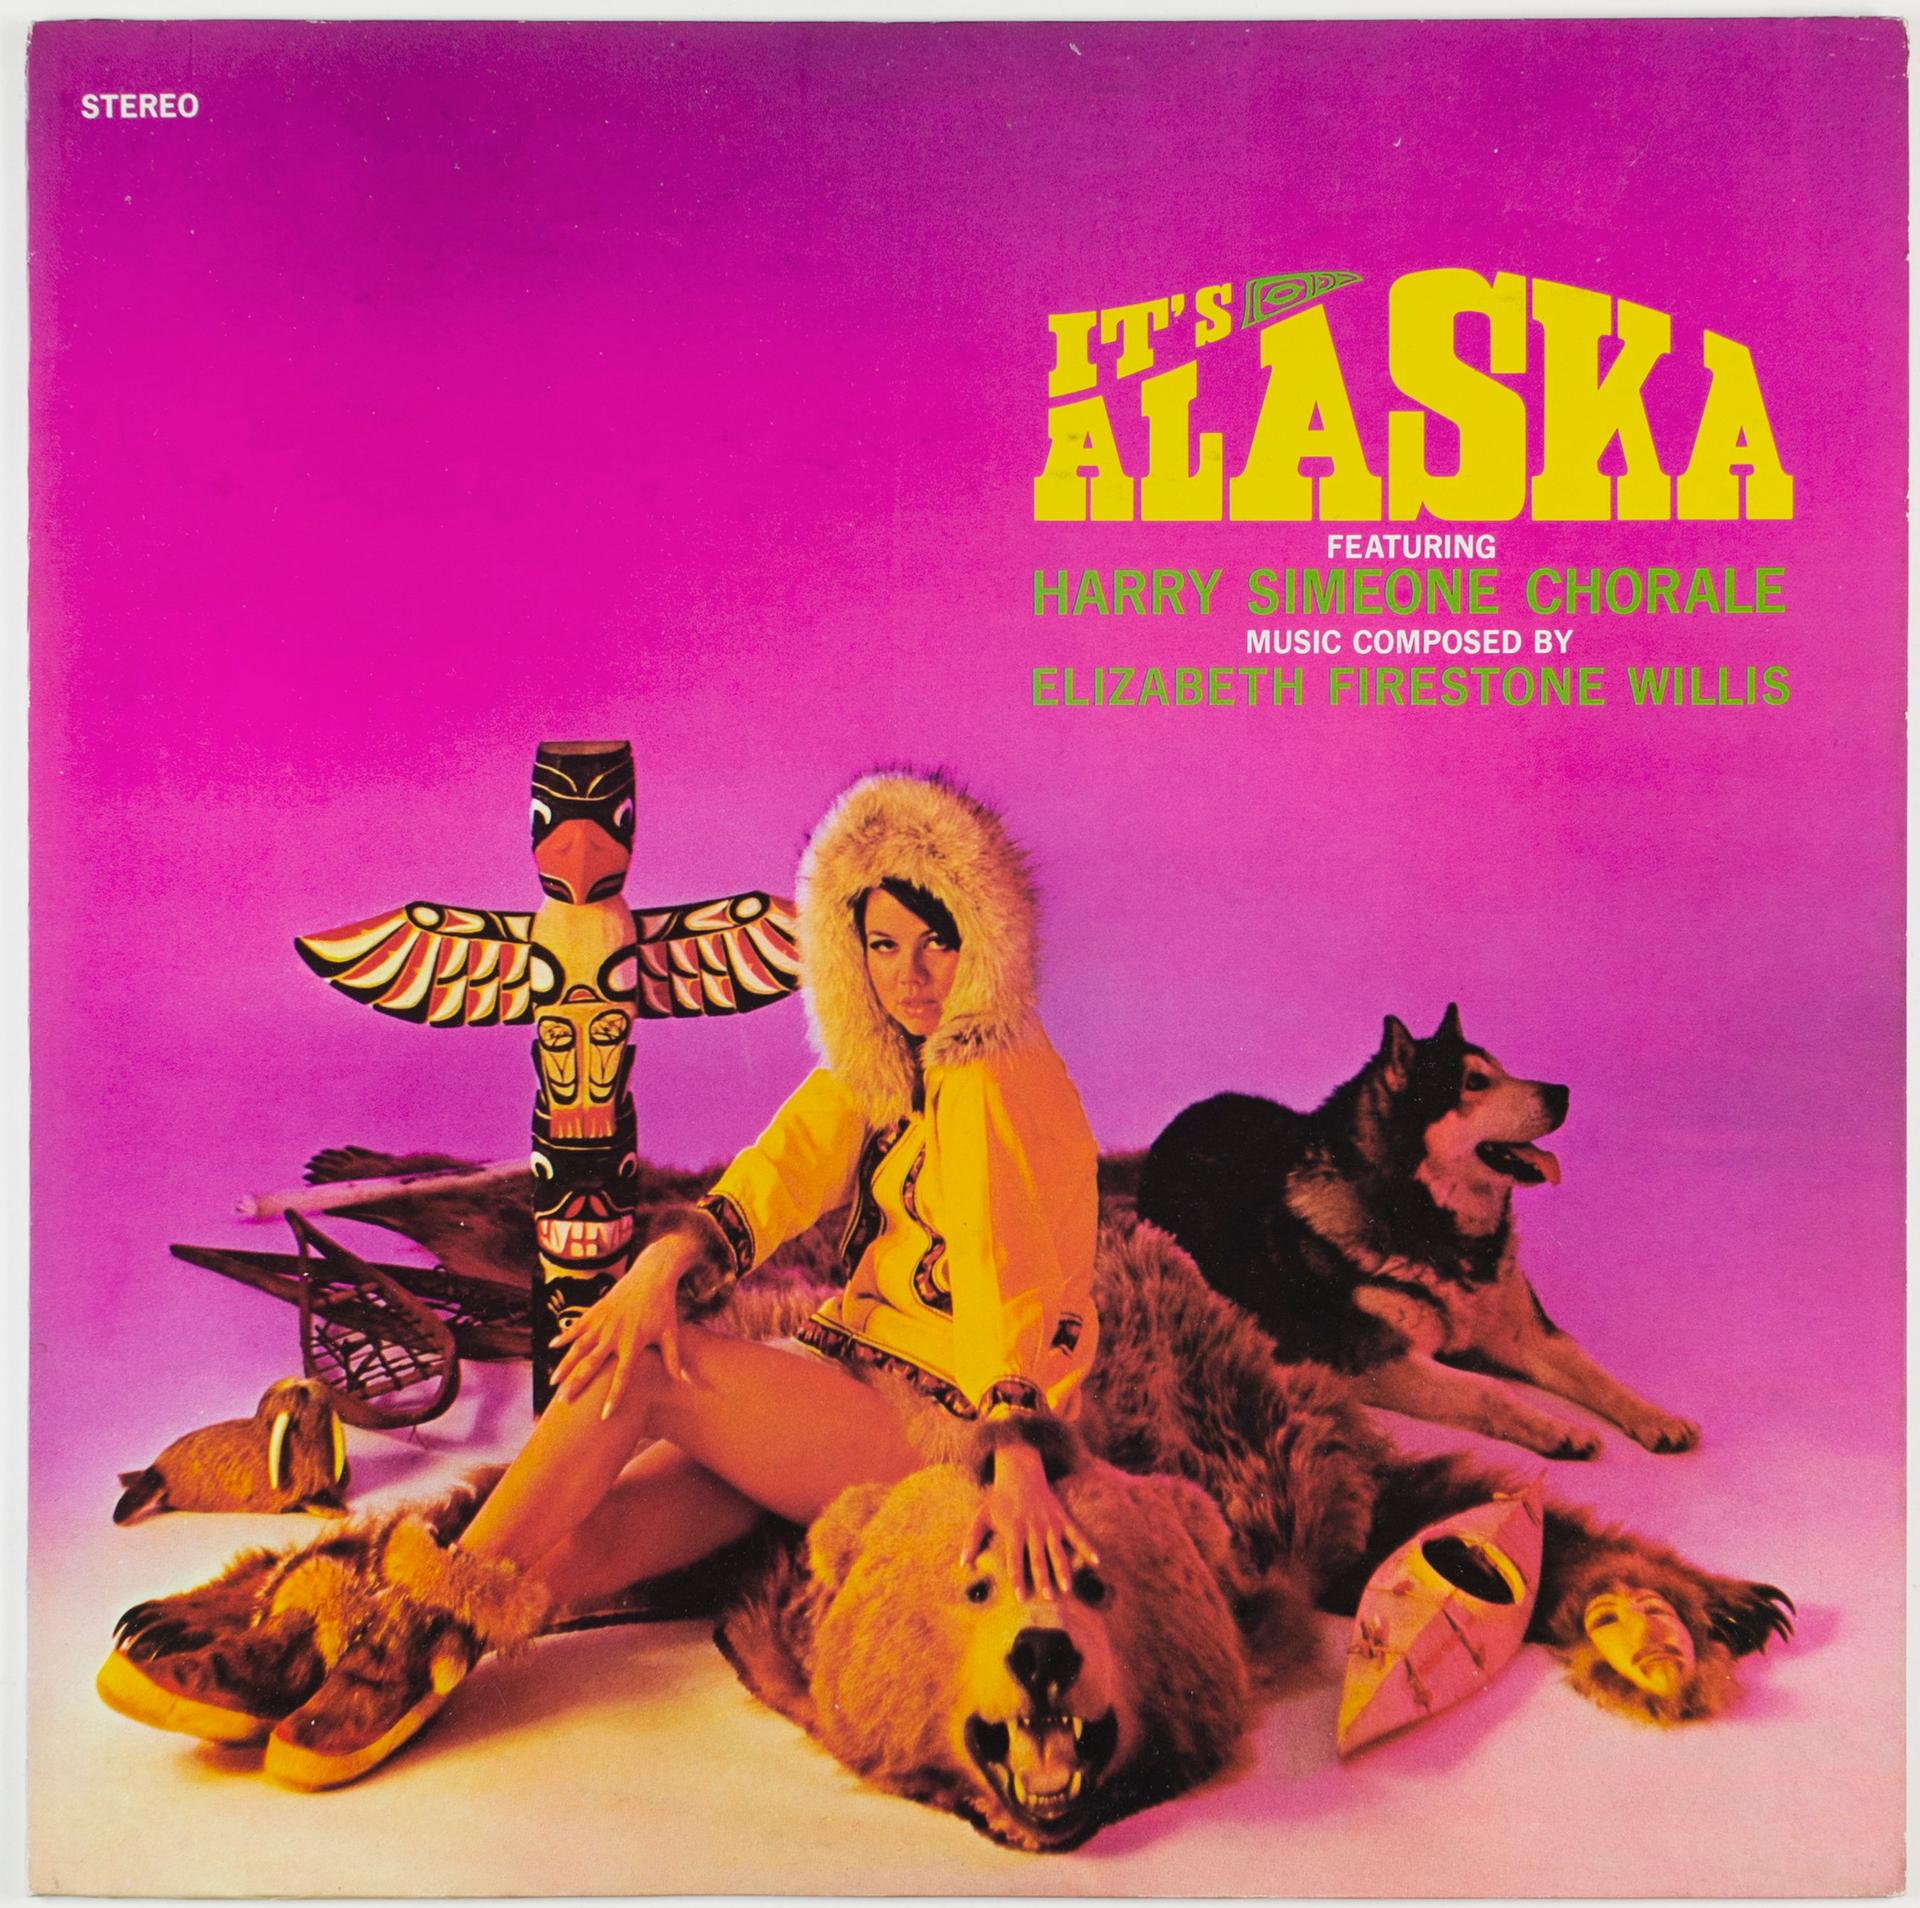 It's Alaska vinyl LP cover